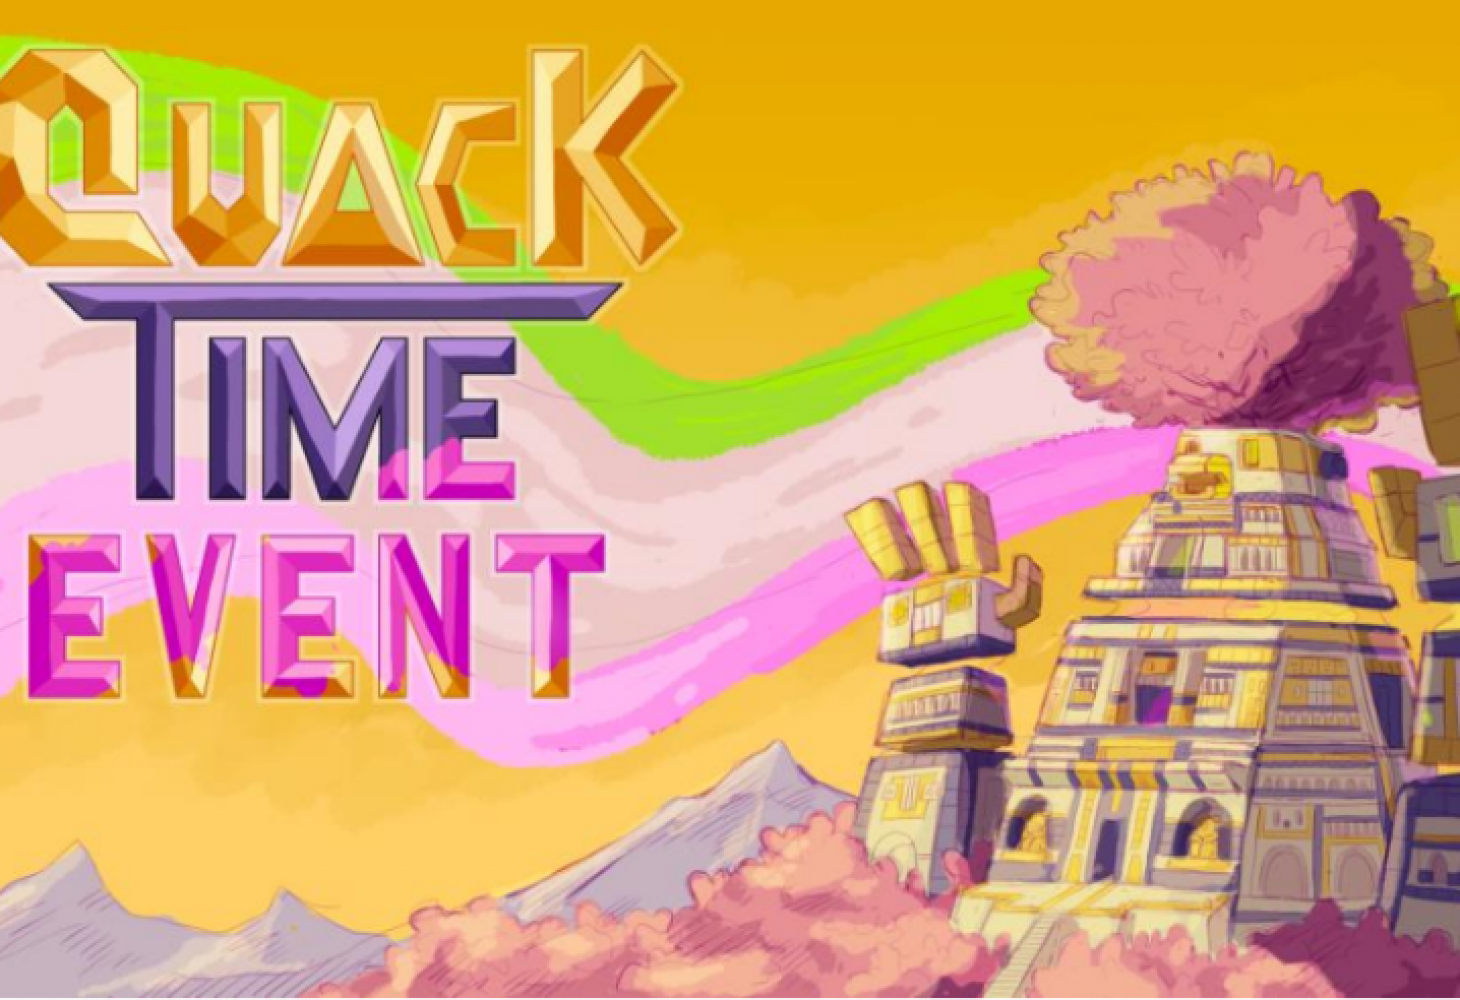 Quack Time Event